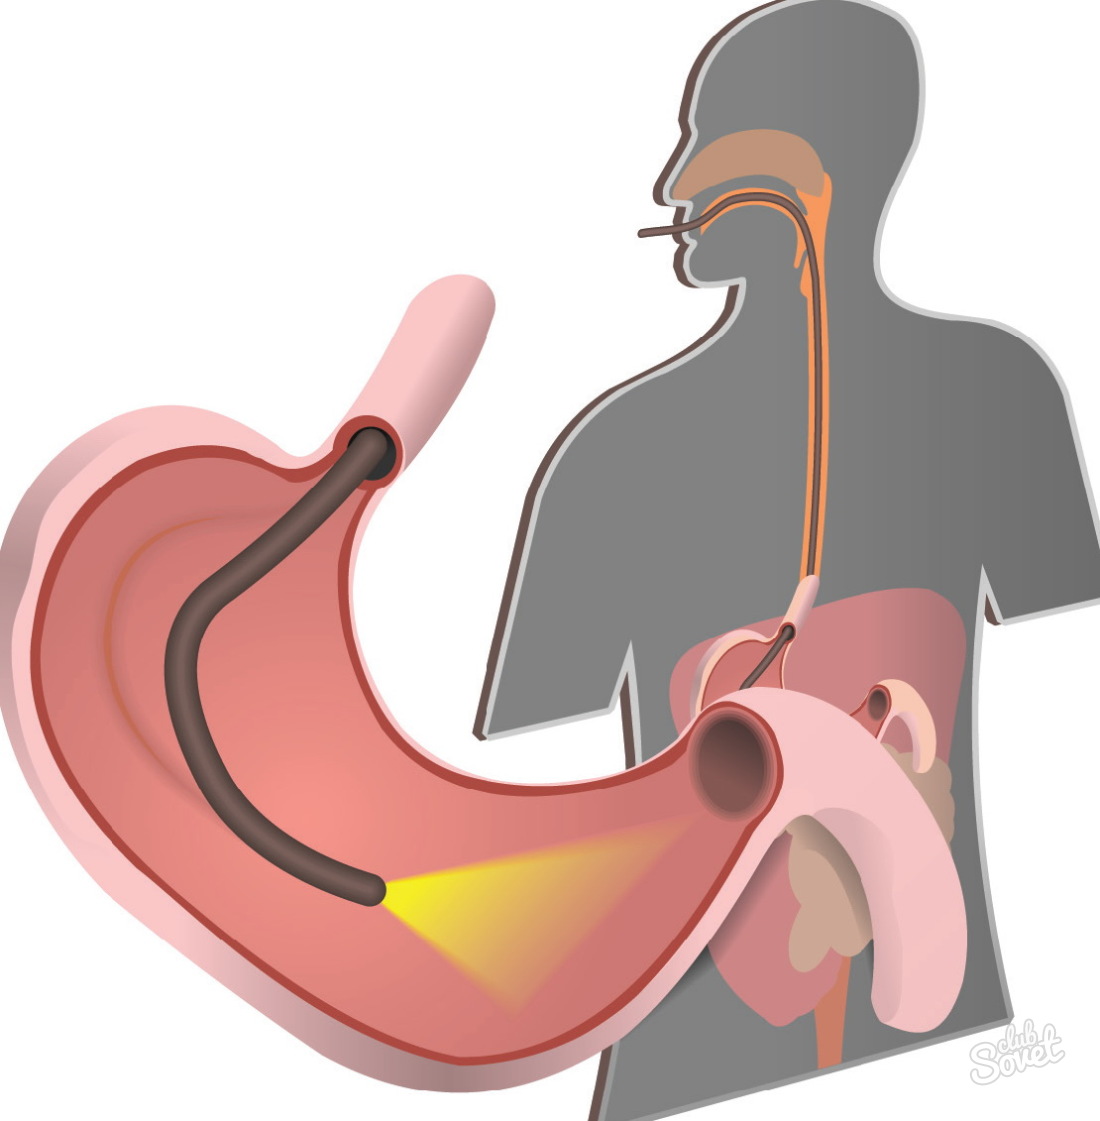 Gastrik gastroskopi için nasıl hazırlanır?